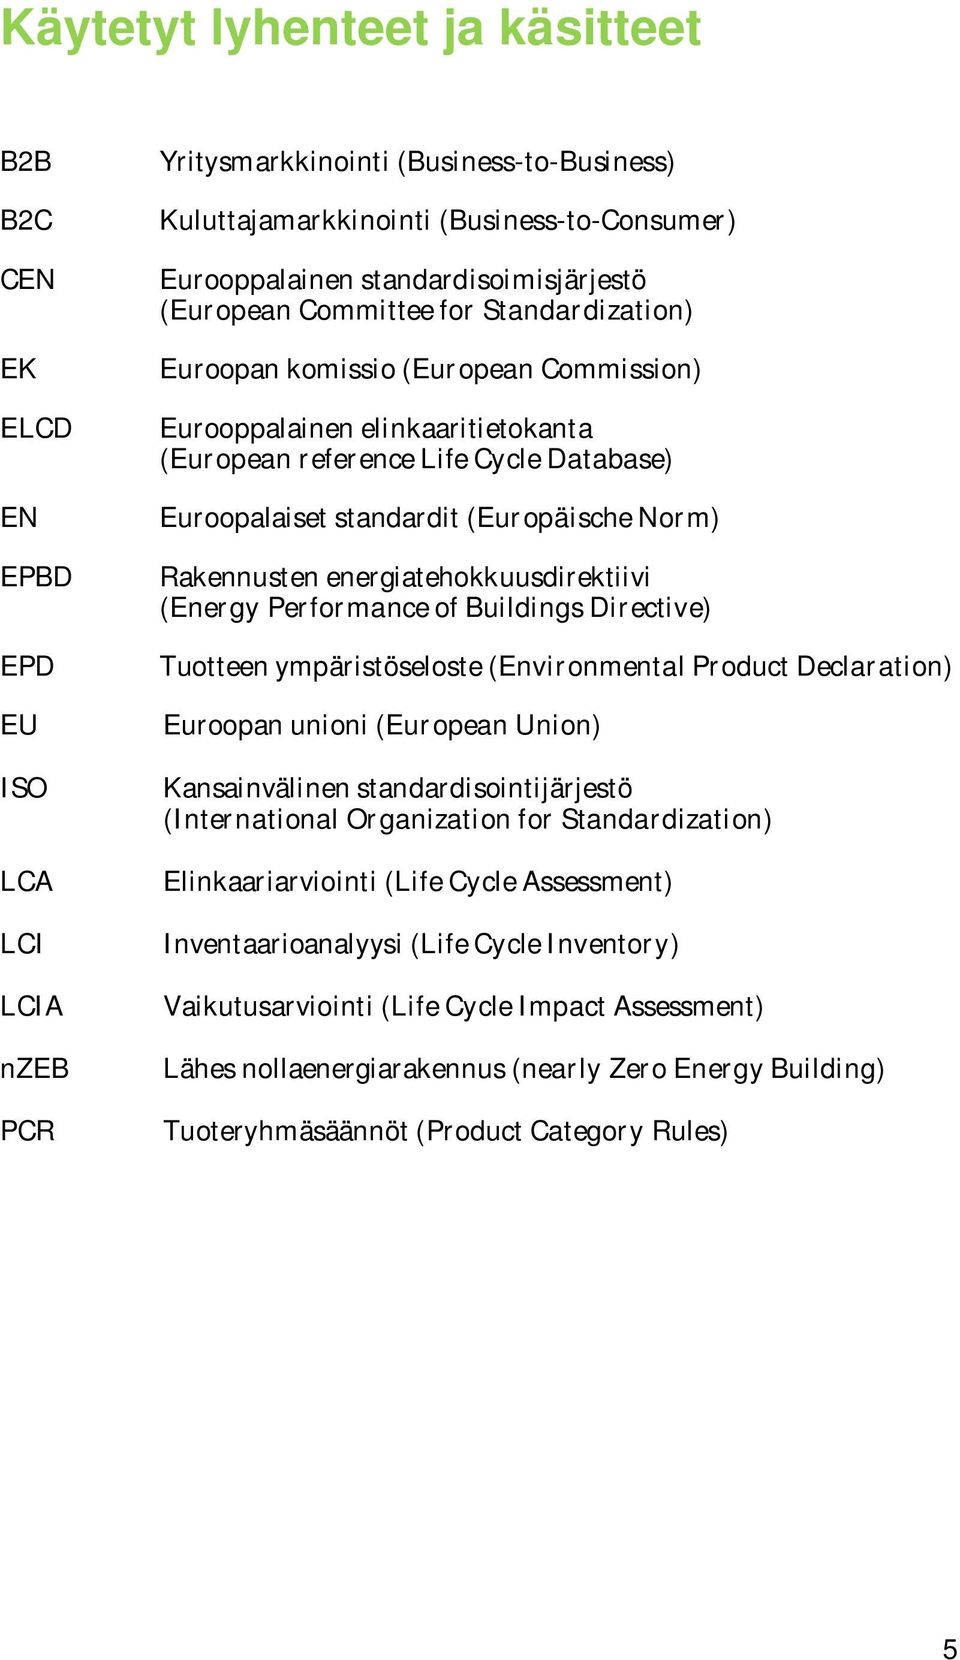 standardit (Europäische Norm) Rakennusten energiatehokkuusdirektiivi (Energy Performance of Buildings Directive) Tuotteen ympäristöseloste (Environmental Product Declaration) Euroopan unioni